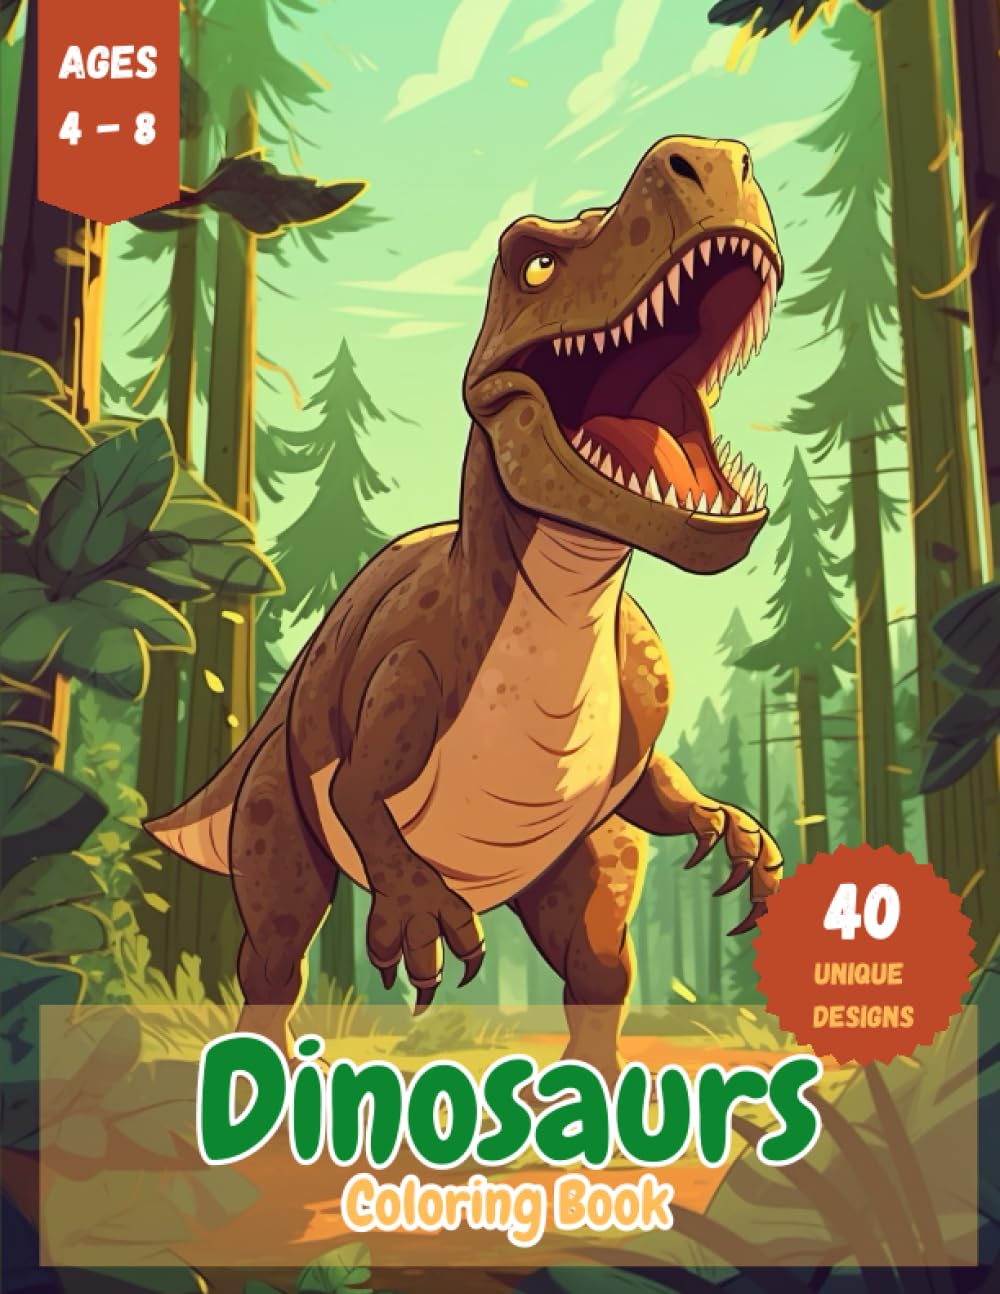 Dinosaurs Coloring Book for Kids ages 4-8 - Tyrannosaurus rex, Velociraptor, Stegosaurus, Triceratops, Brachiosaurus